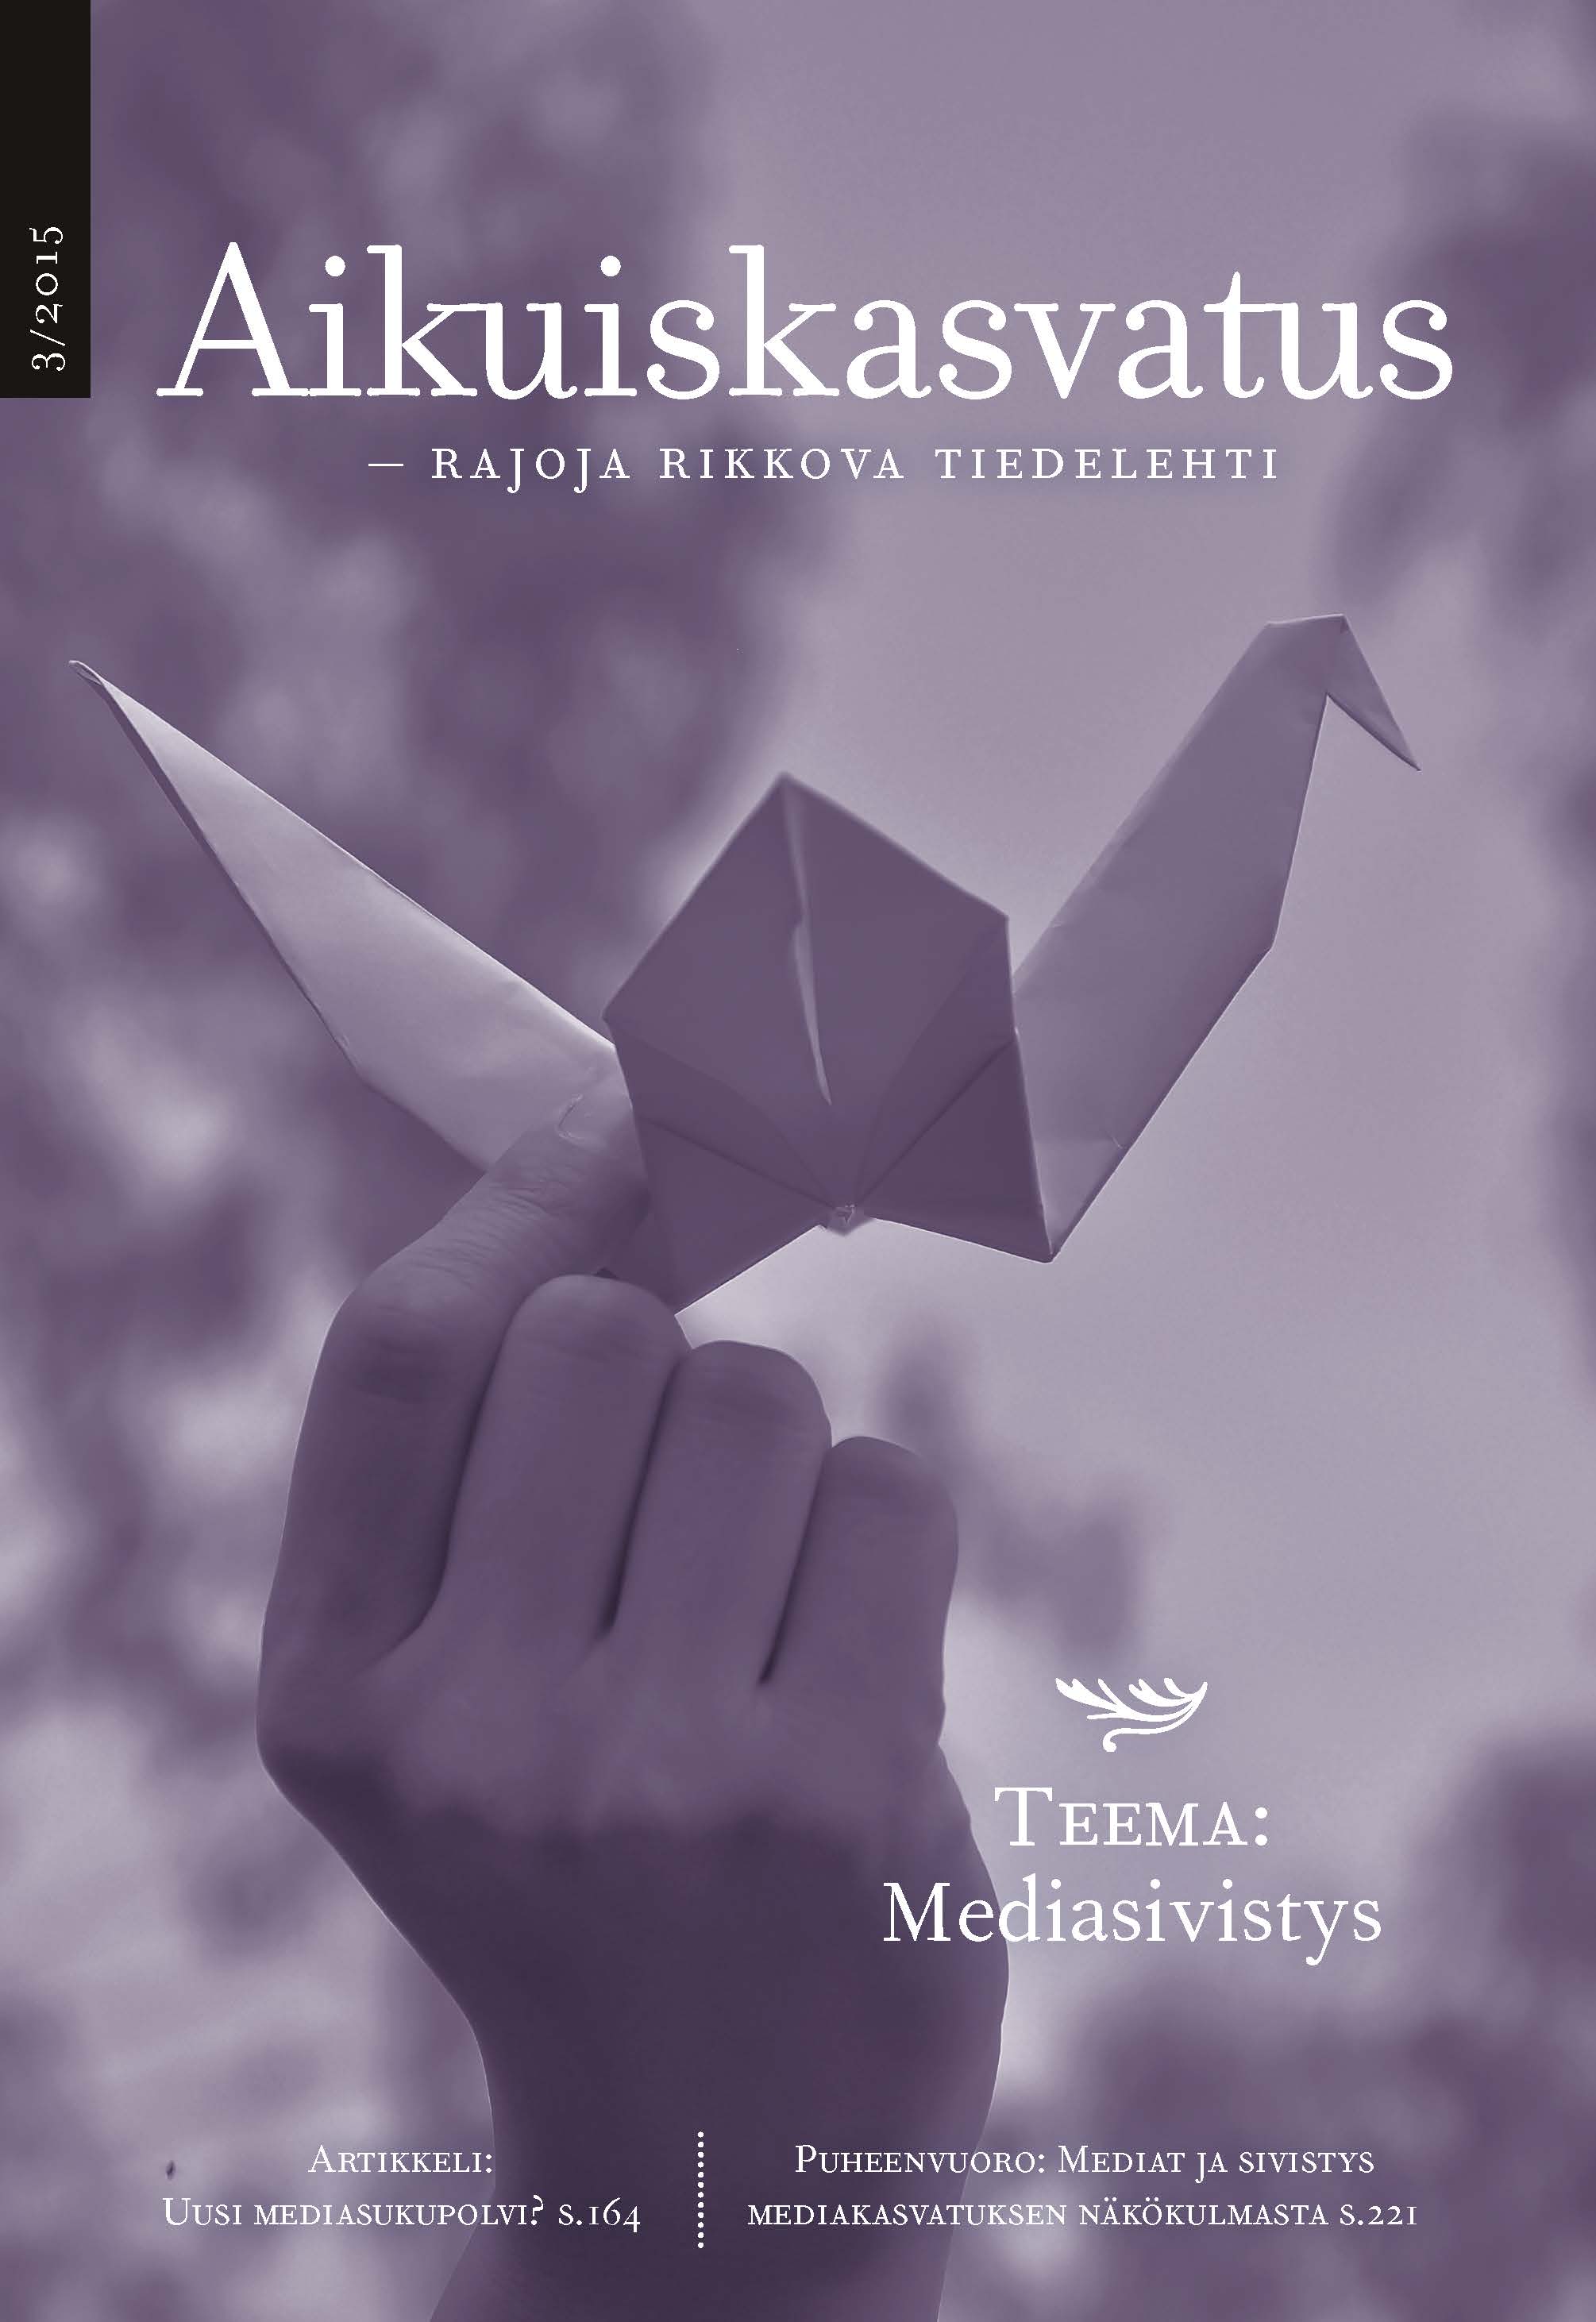 					Näytä Vol 35 Nro 3 (2015): Aikuiskasvatus 3/2015: Mediasivistys
				